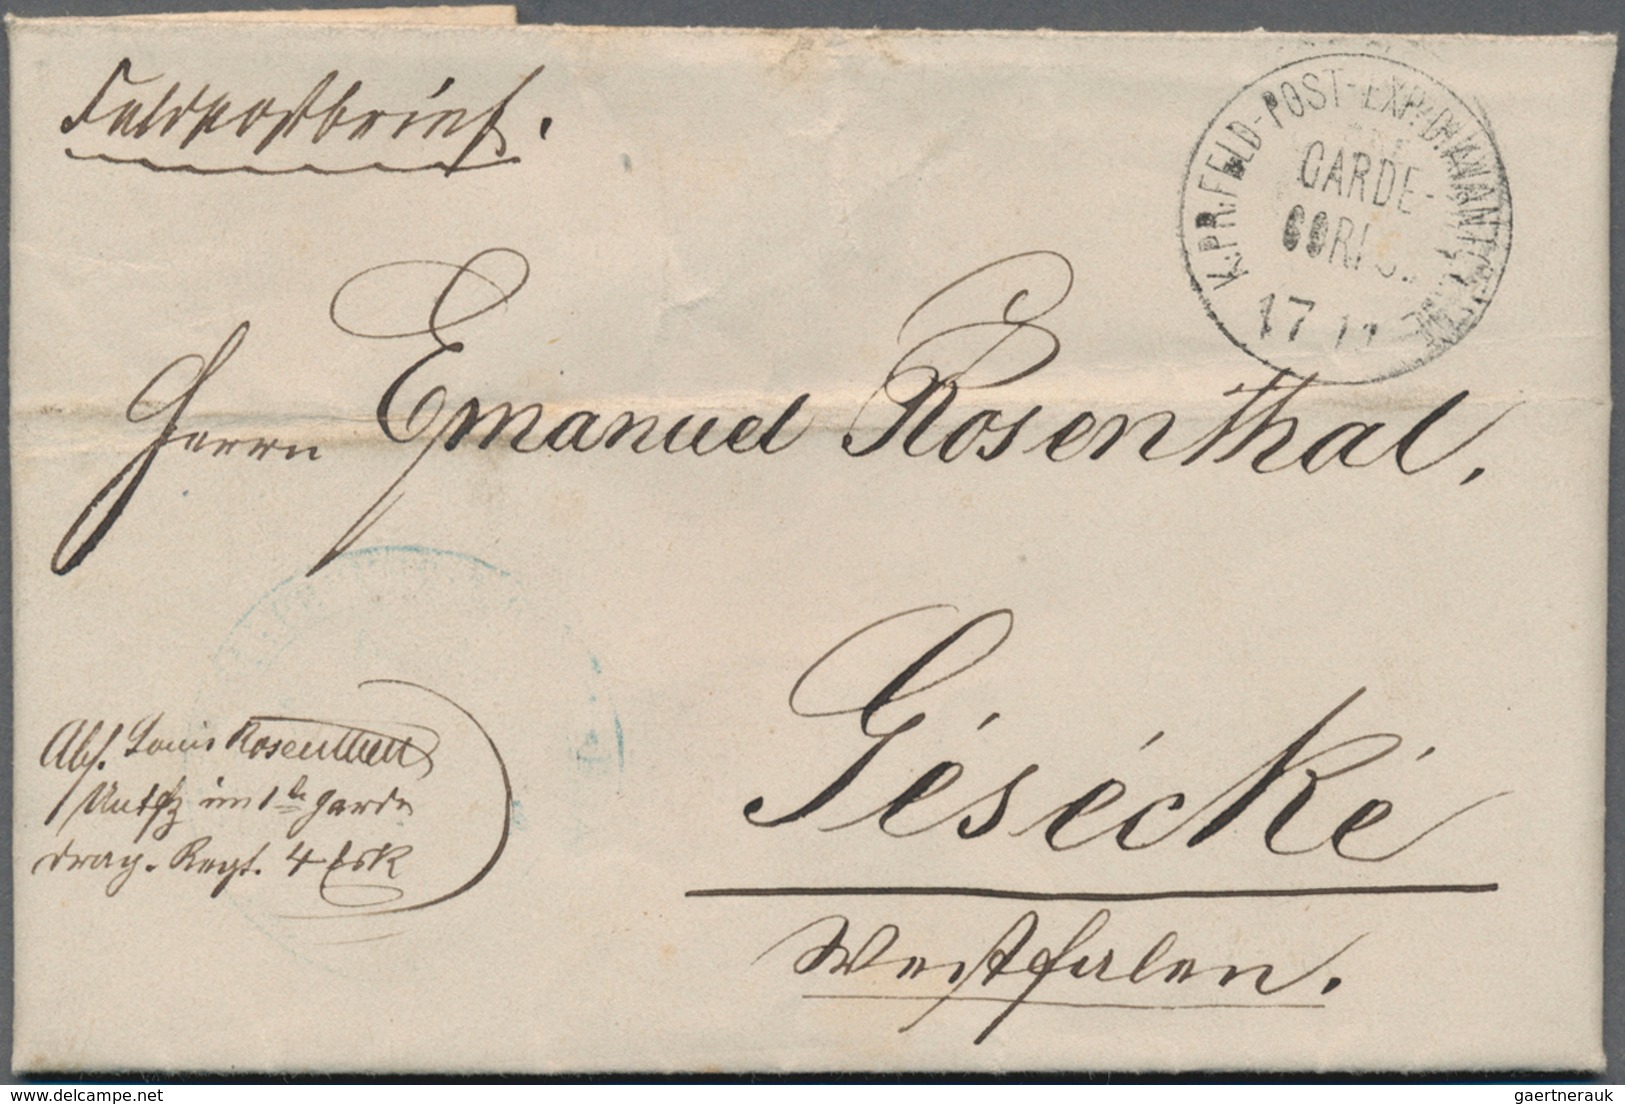 Preußen - Feldpost: 1870-1871 (ca.), DEUTSCH-FRANZ. KRIEG, herausragende Sammlung von ca. 155 Belege